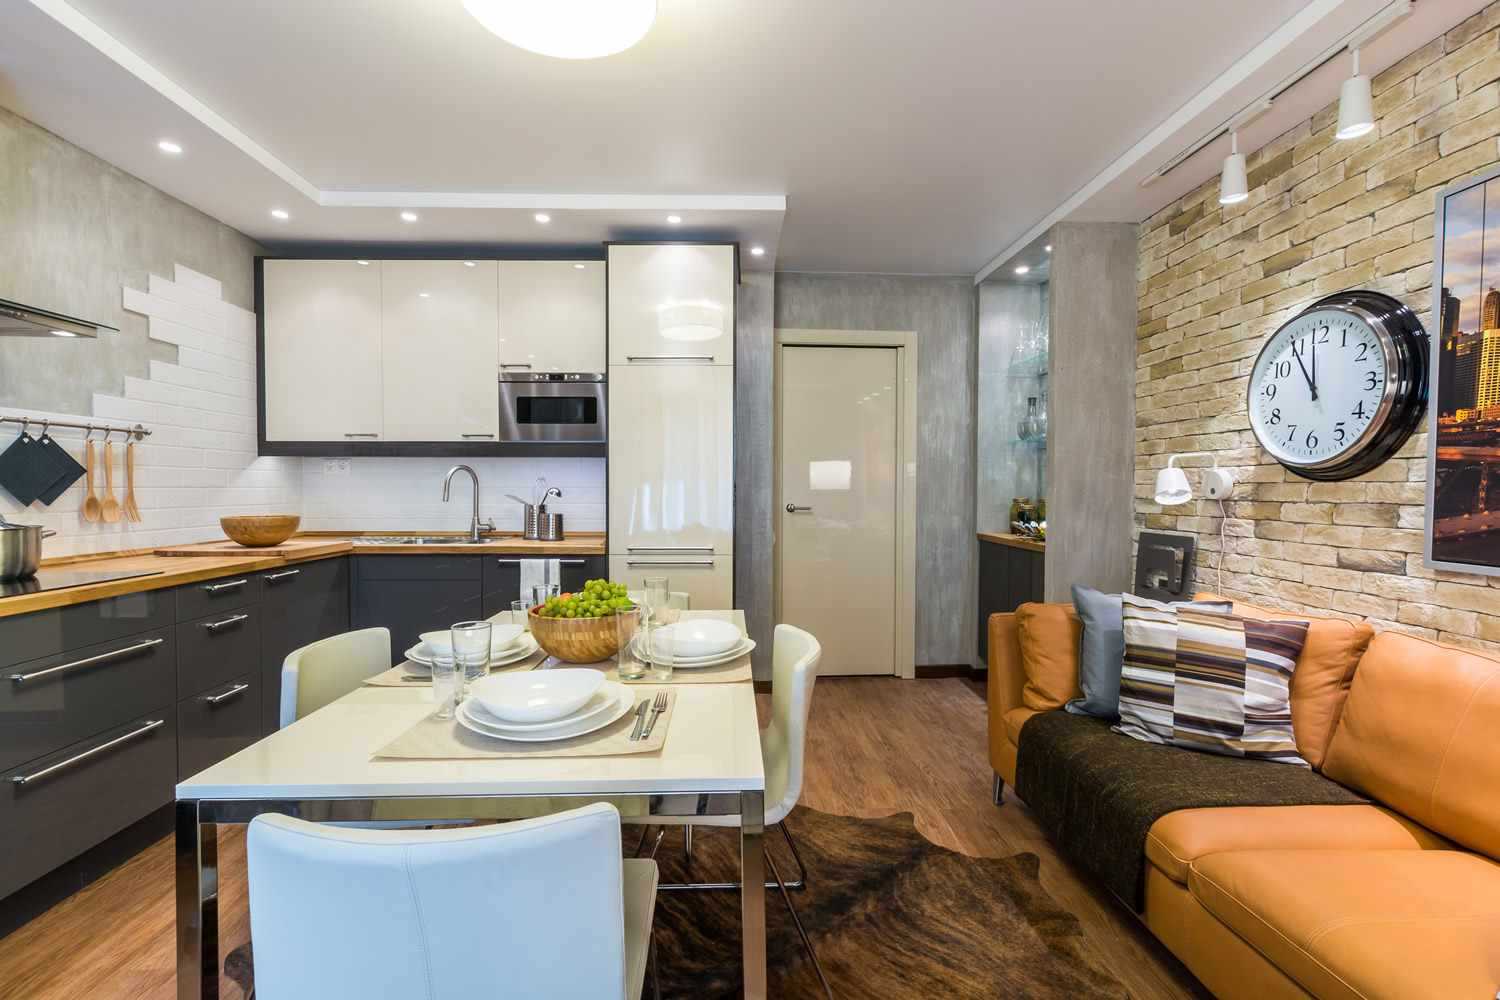 Хорошей возможностью для небольших квартир является объединение кухни с гостиной Получается интересный эффект  убирая одну стену или часть стены, у вас возникает огромная кухня и просторная гостиная